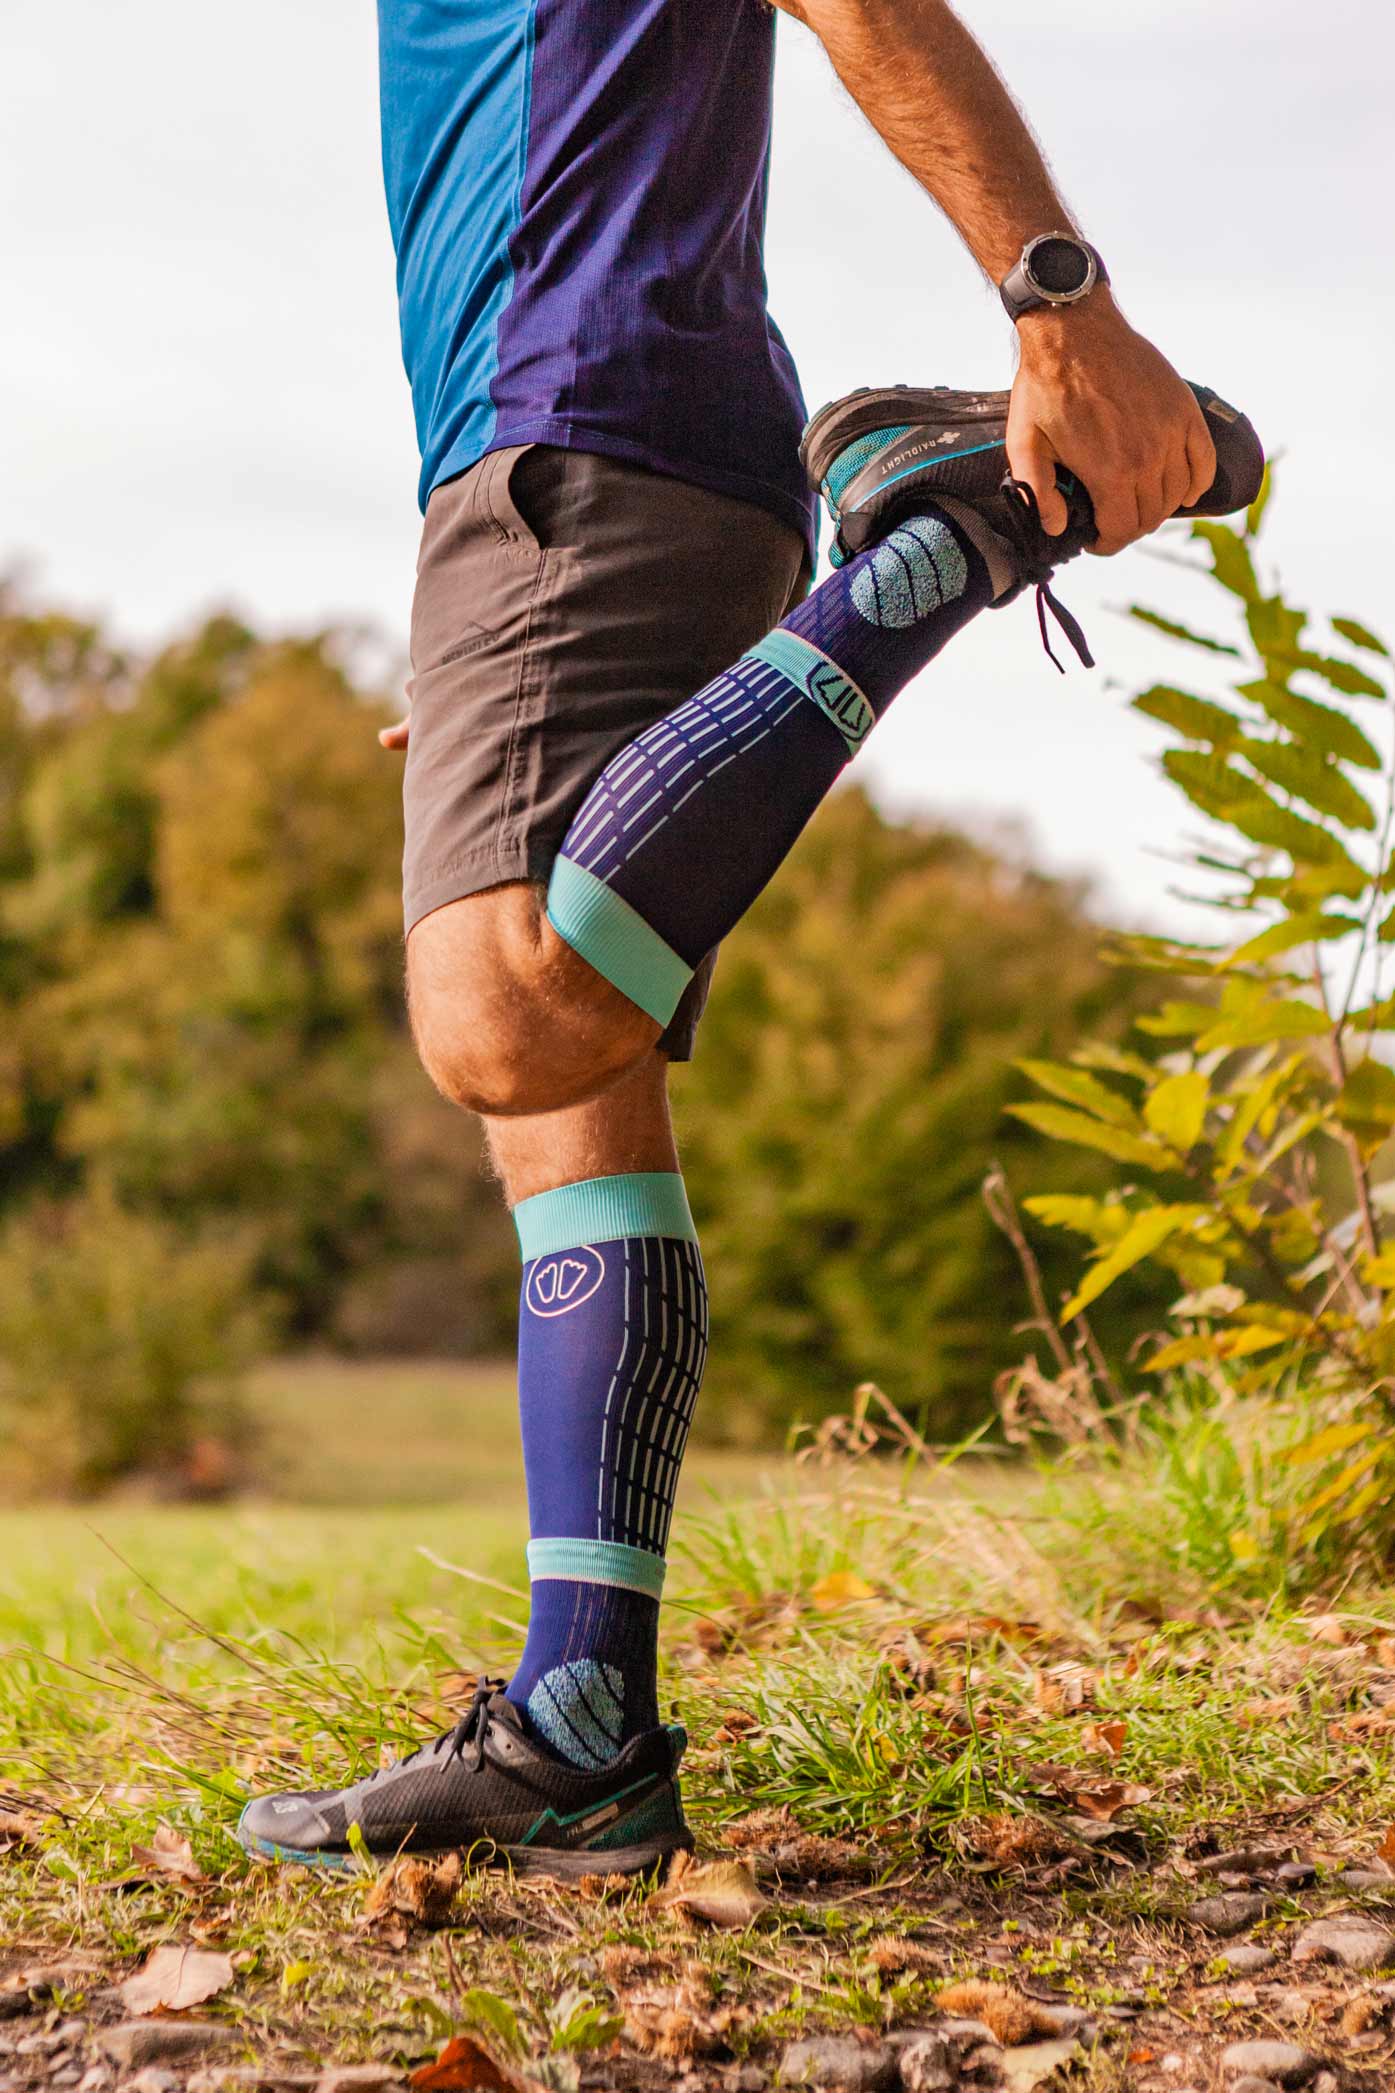 Cómo tienen que ser los calcetines de trail running?